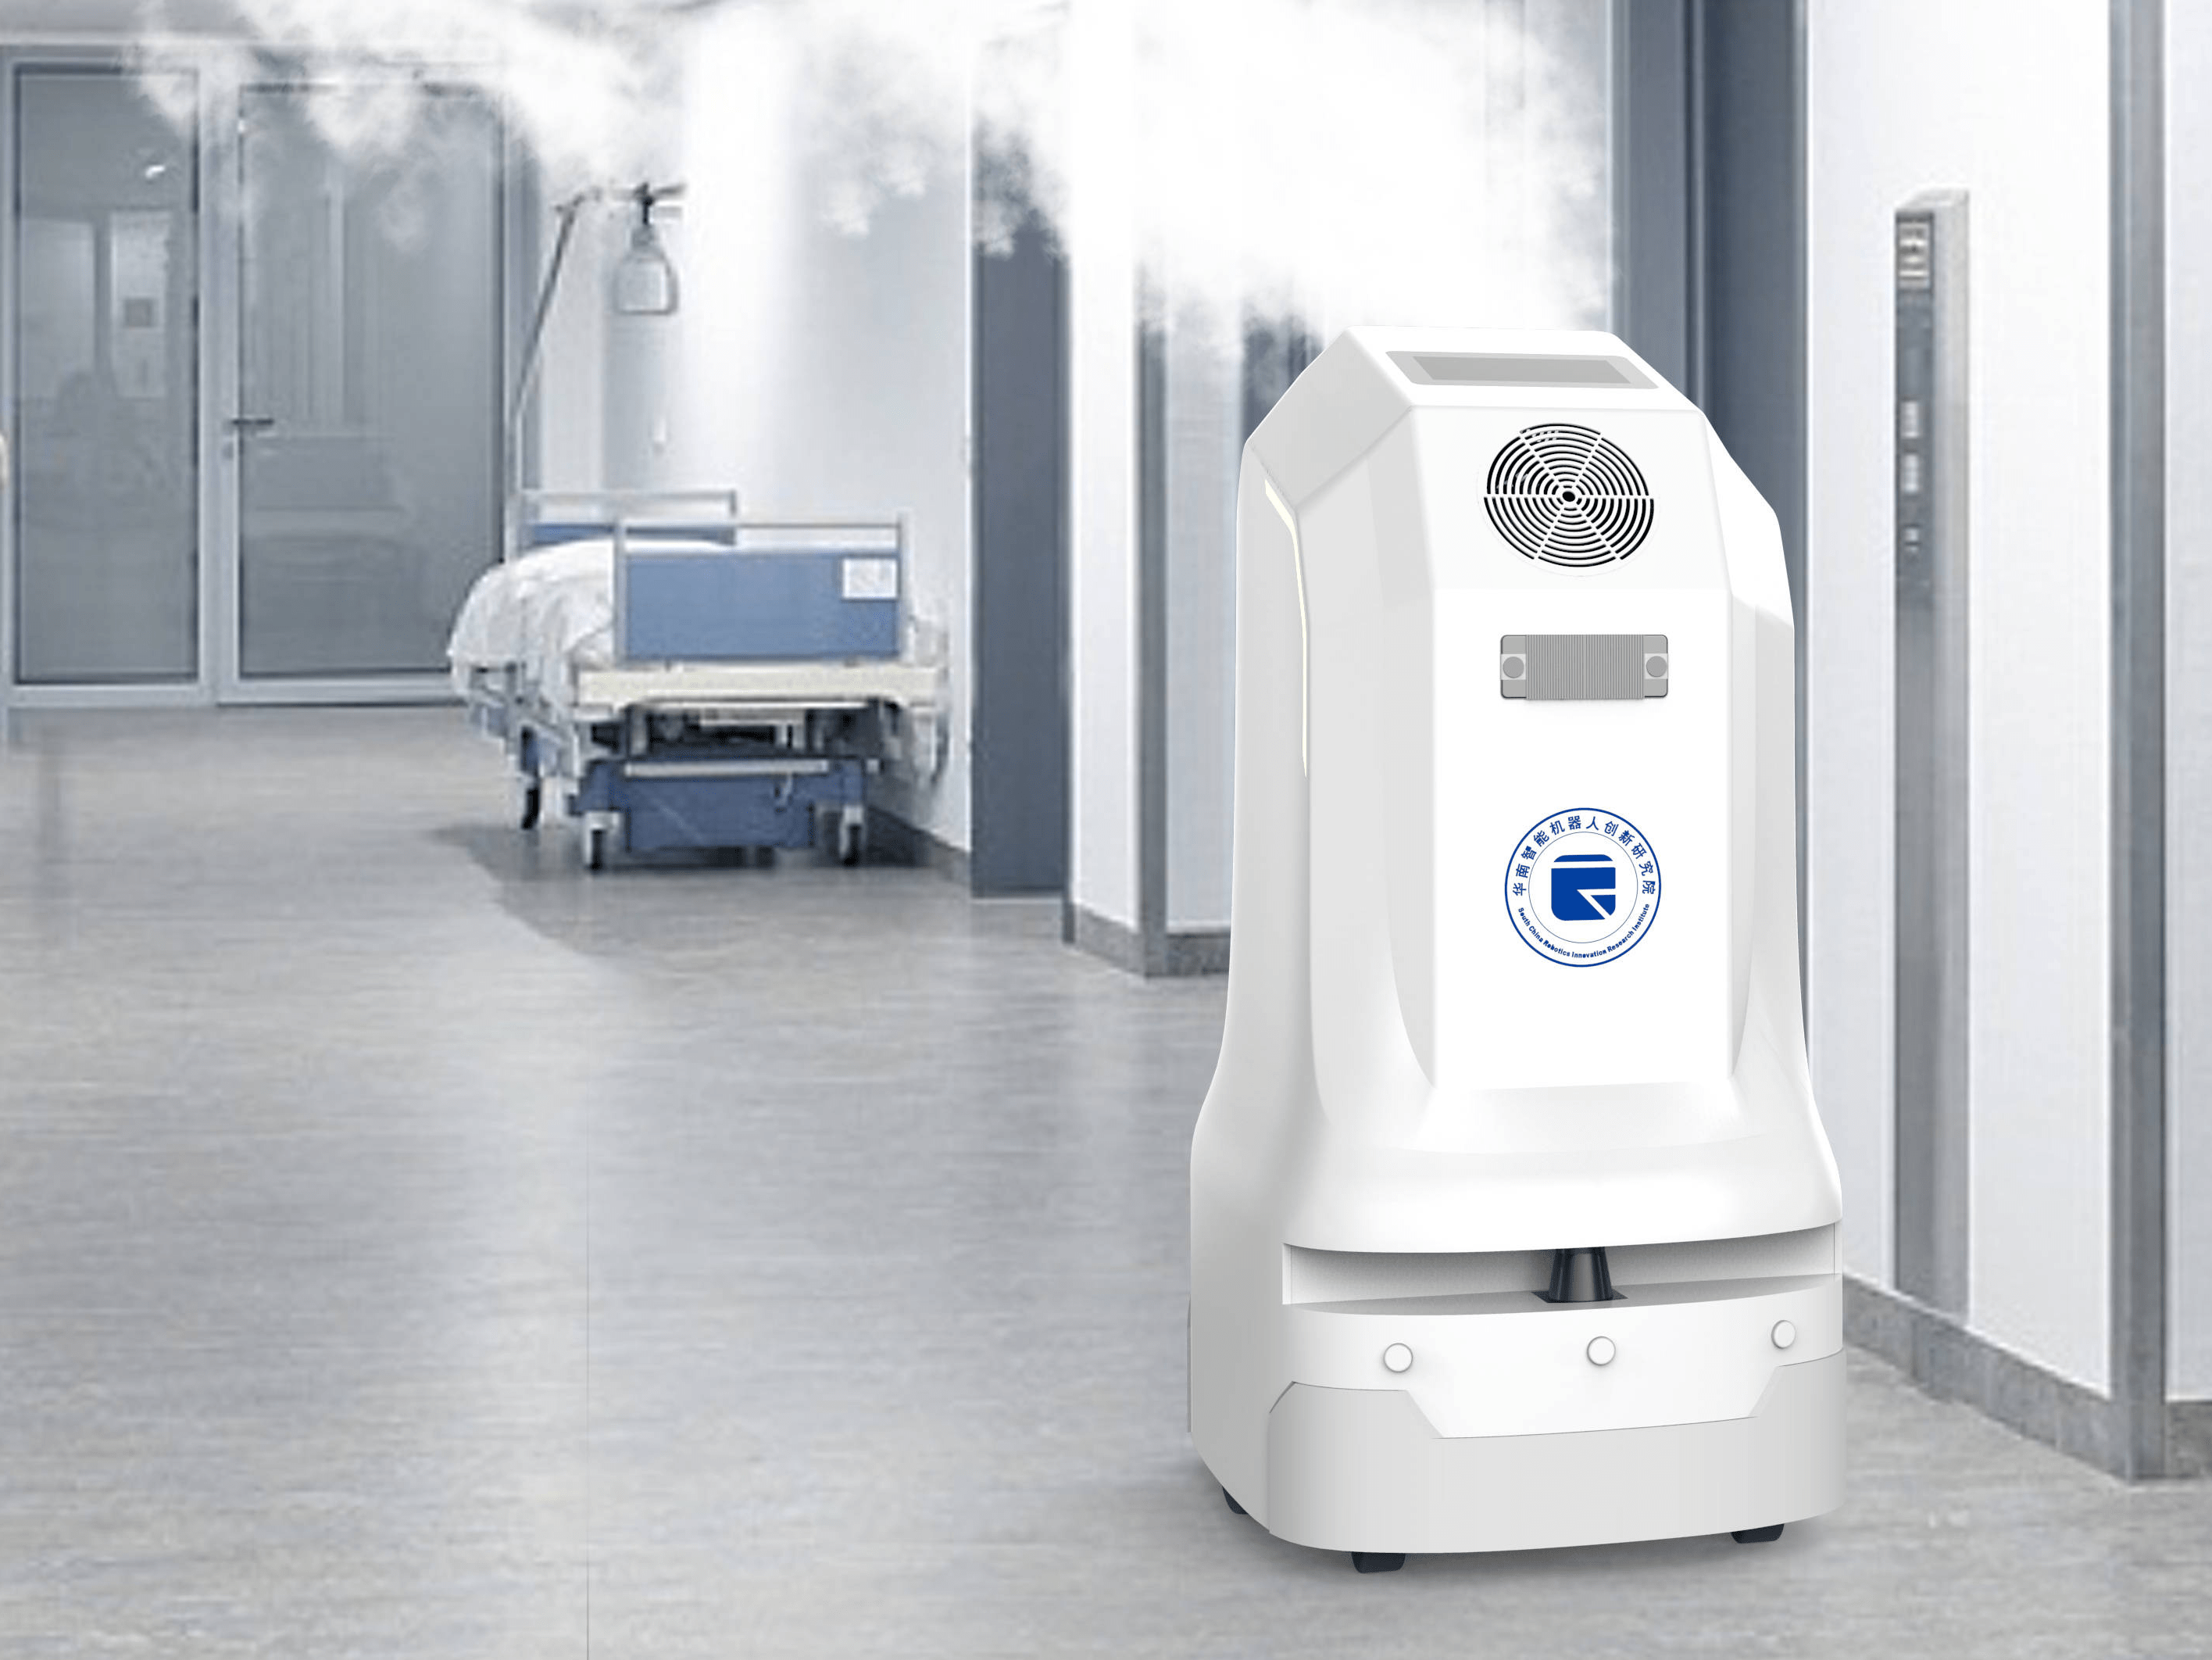 疫情防控常态化,医院智能消毒机器人大显身手!